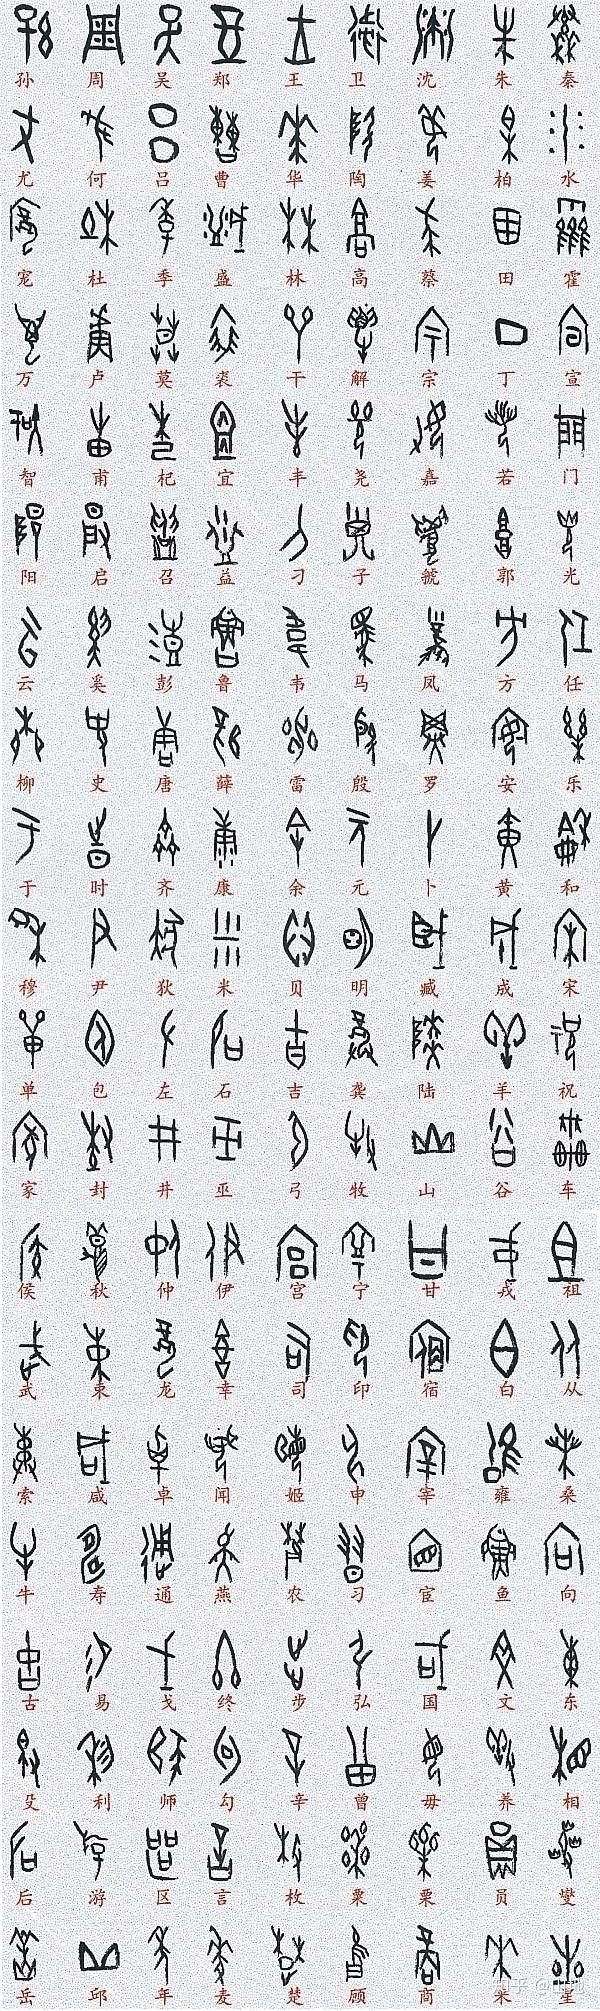 中国象形文字和埃及象形文字有什么相似之处